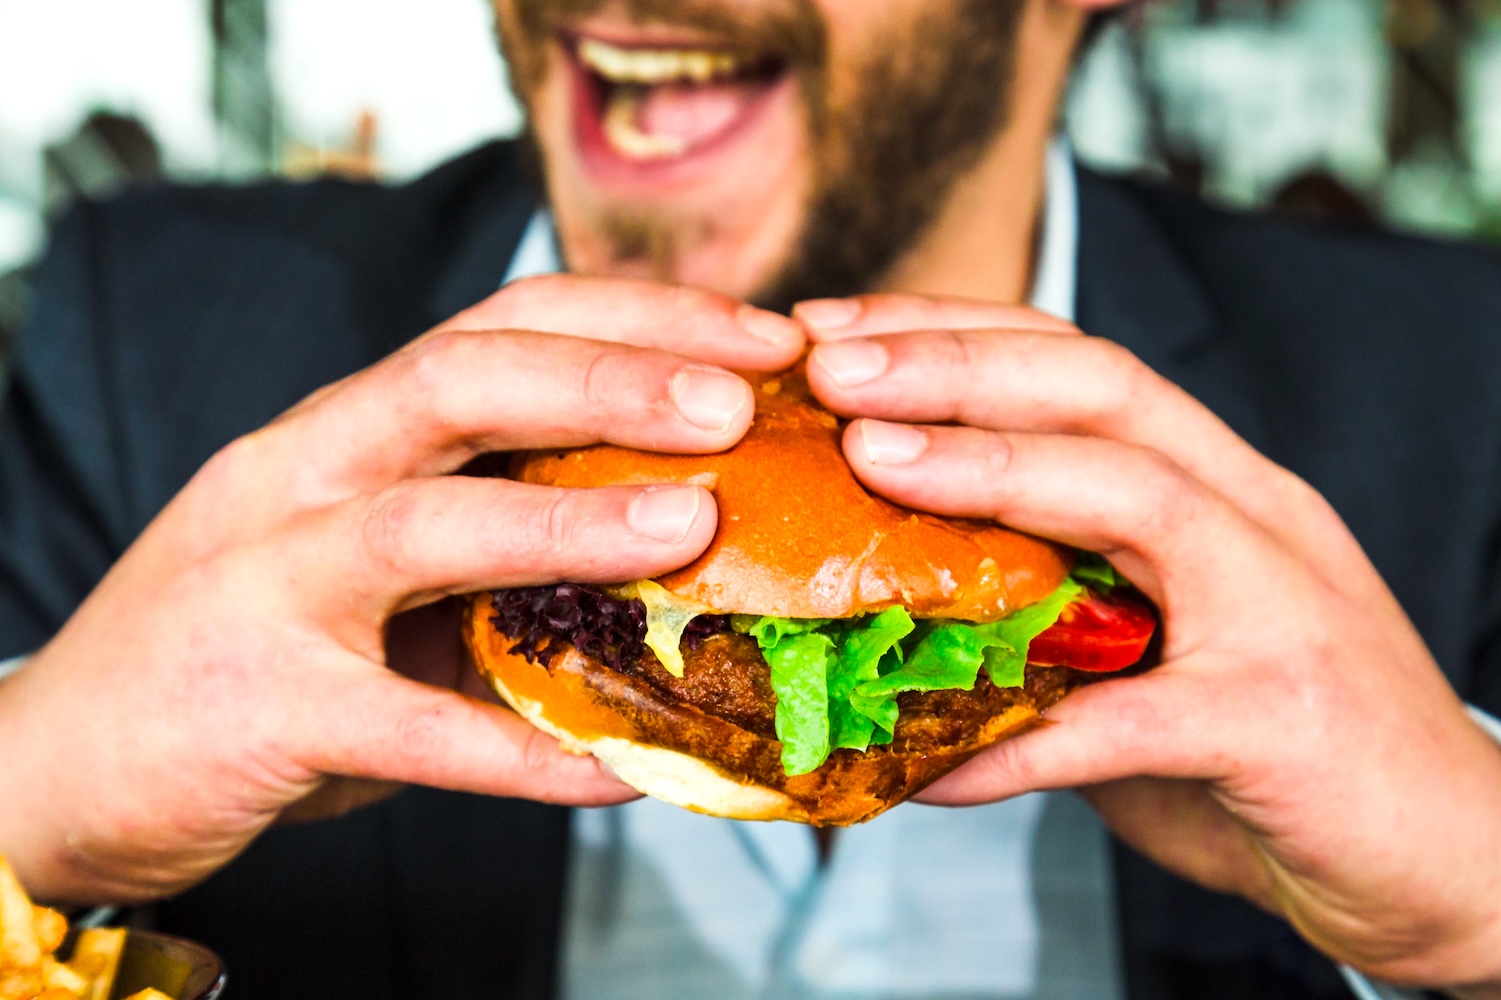 EE.UU. tiene "la mejor dieta del mundo para adelgazar", según un nuevo y desconcertante estudio